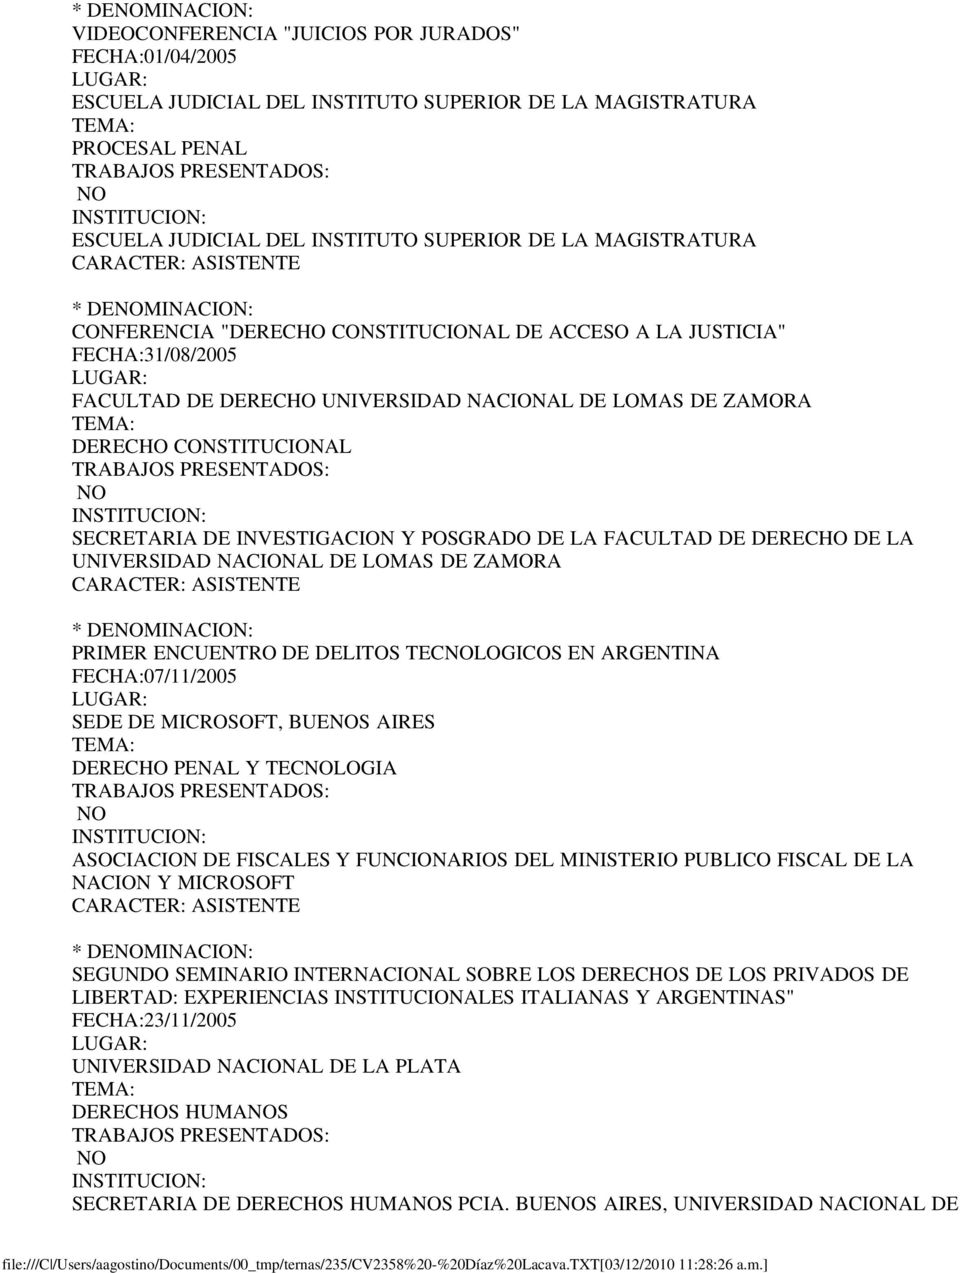 INVESTIGACION Y POSGRADO DE LA FACULTAD DE DERECHO DE LA UNIVERSIDAD NACIONAL DE LOMAS DE ZAMORA * DEMINACION: PRIMER ENCUENTRO DE DELITOS TECLOGICOS EN ARGENTINA FECHA:07/11/2005 SEDE DE MICROSOFT,